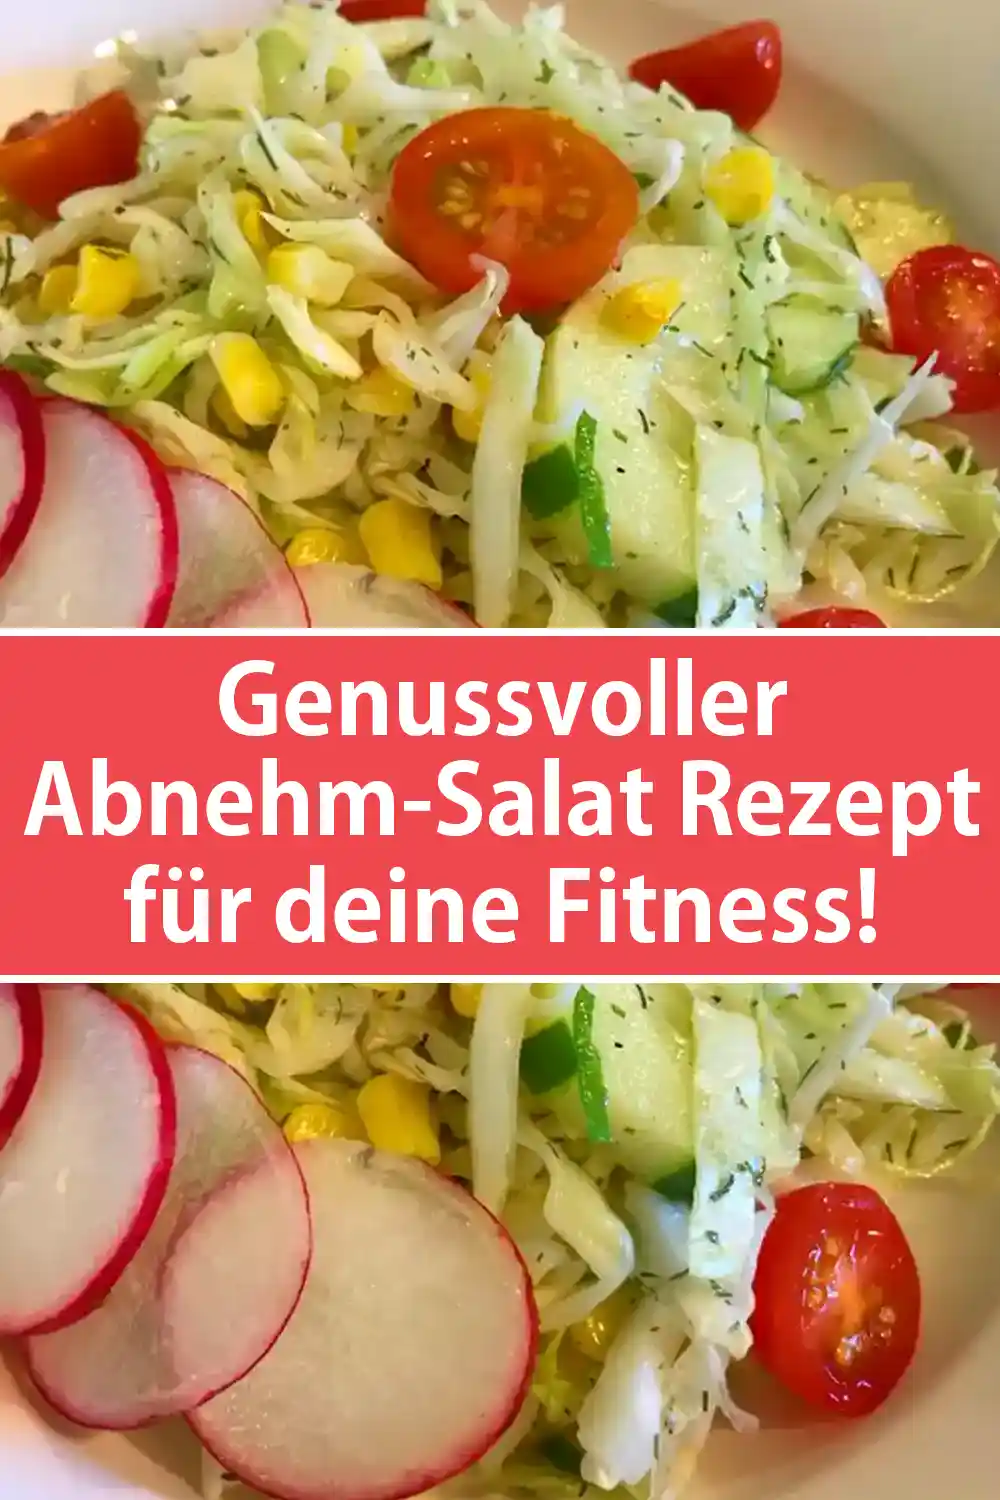 Genussvoller Abnehm-Salat Rezept für deine Fitness!